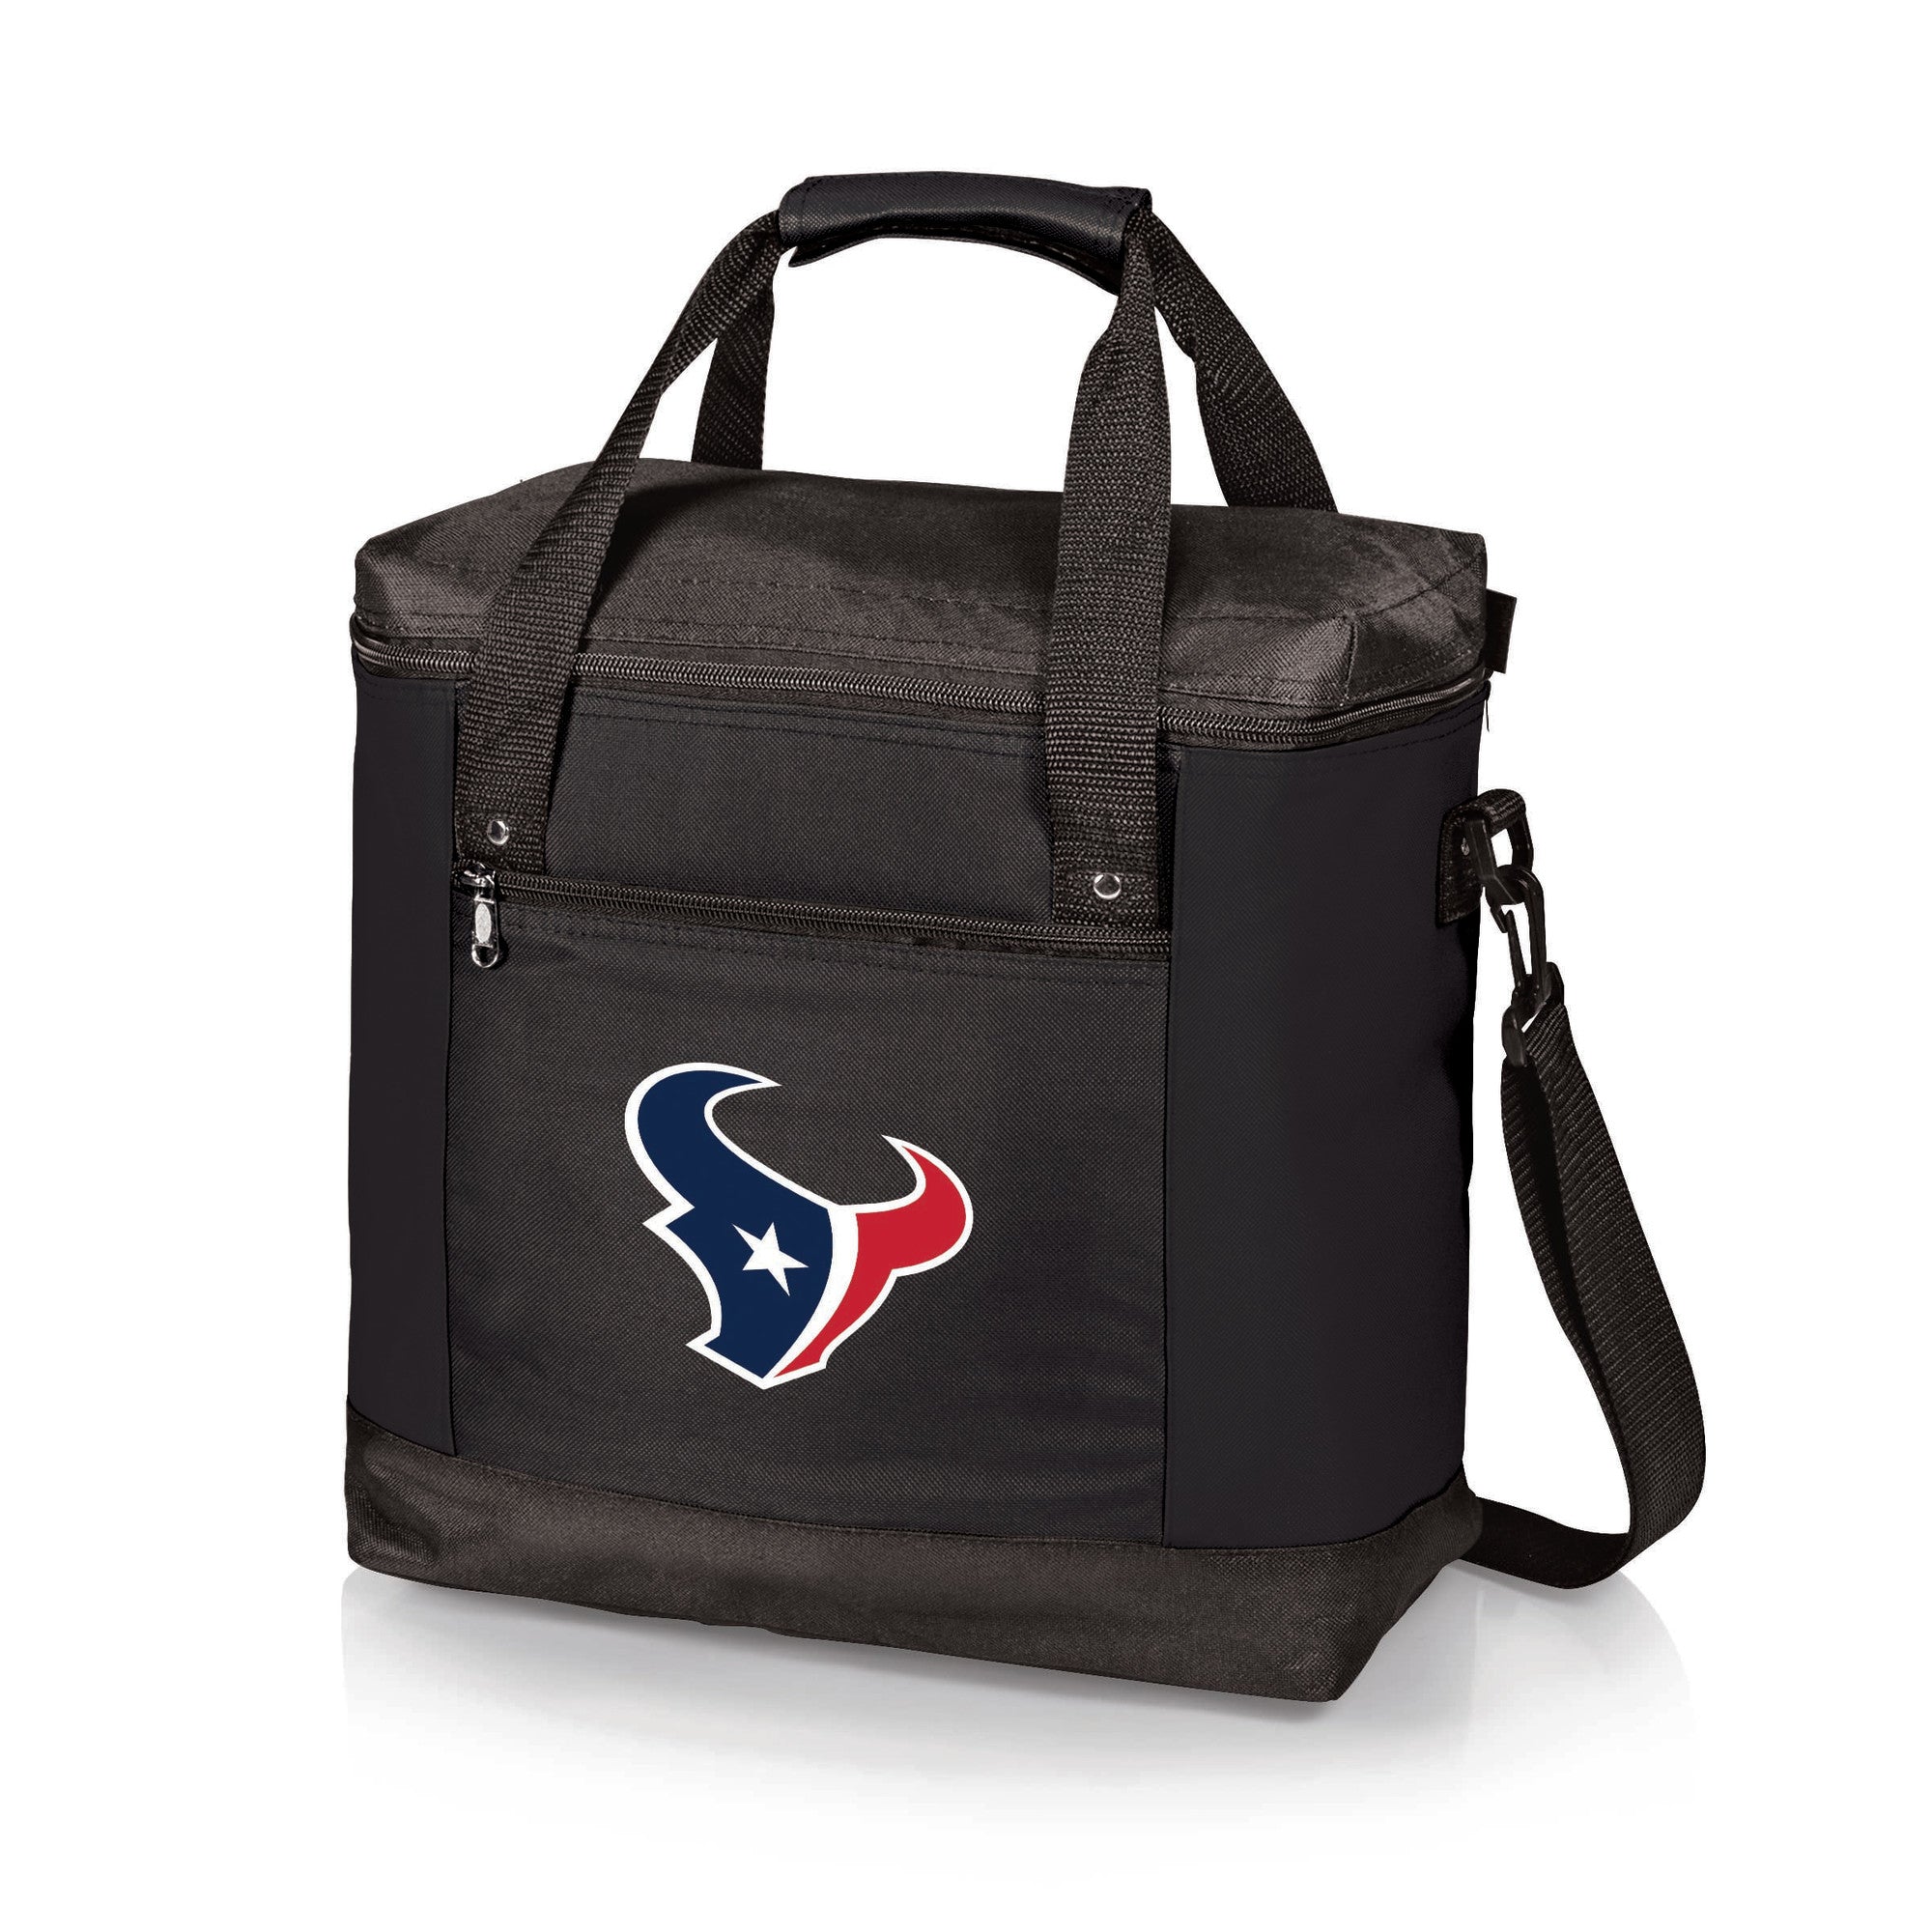 Houston Texans - Montero Cooler Tote Bag